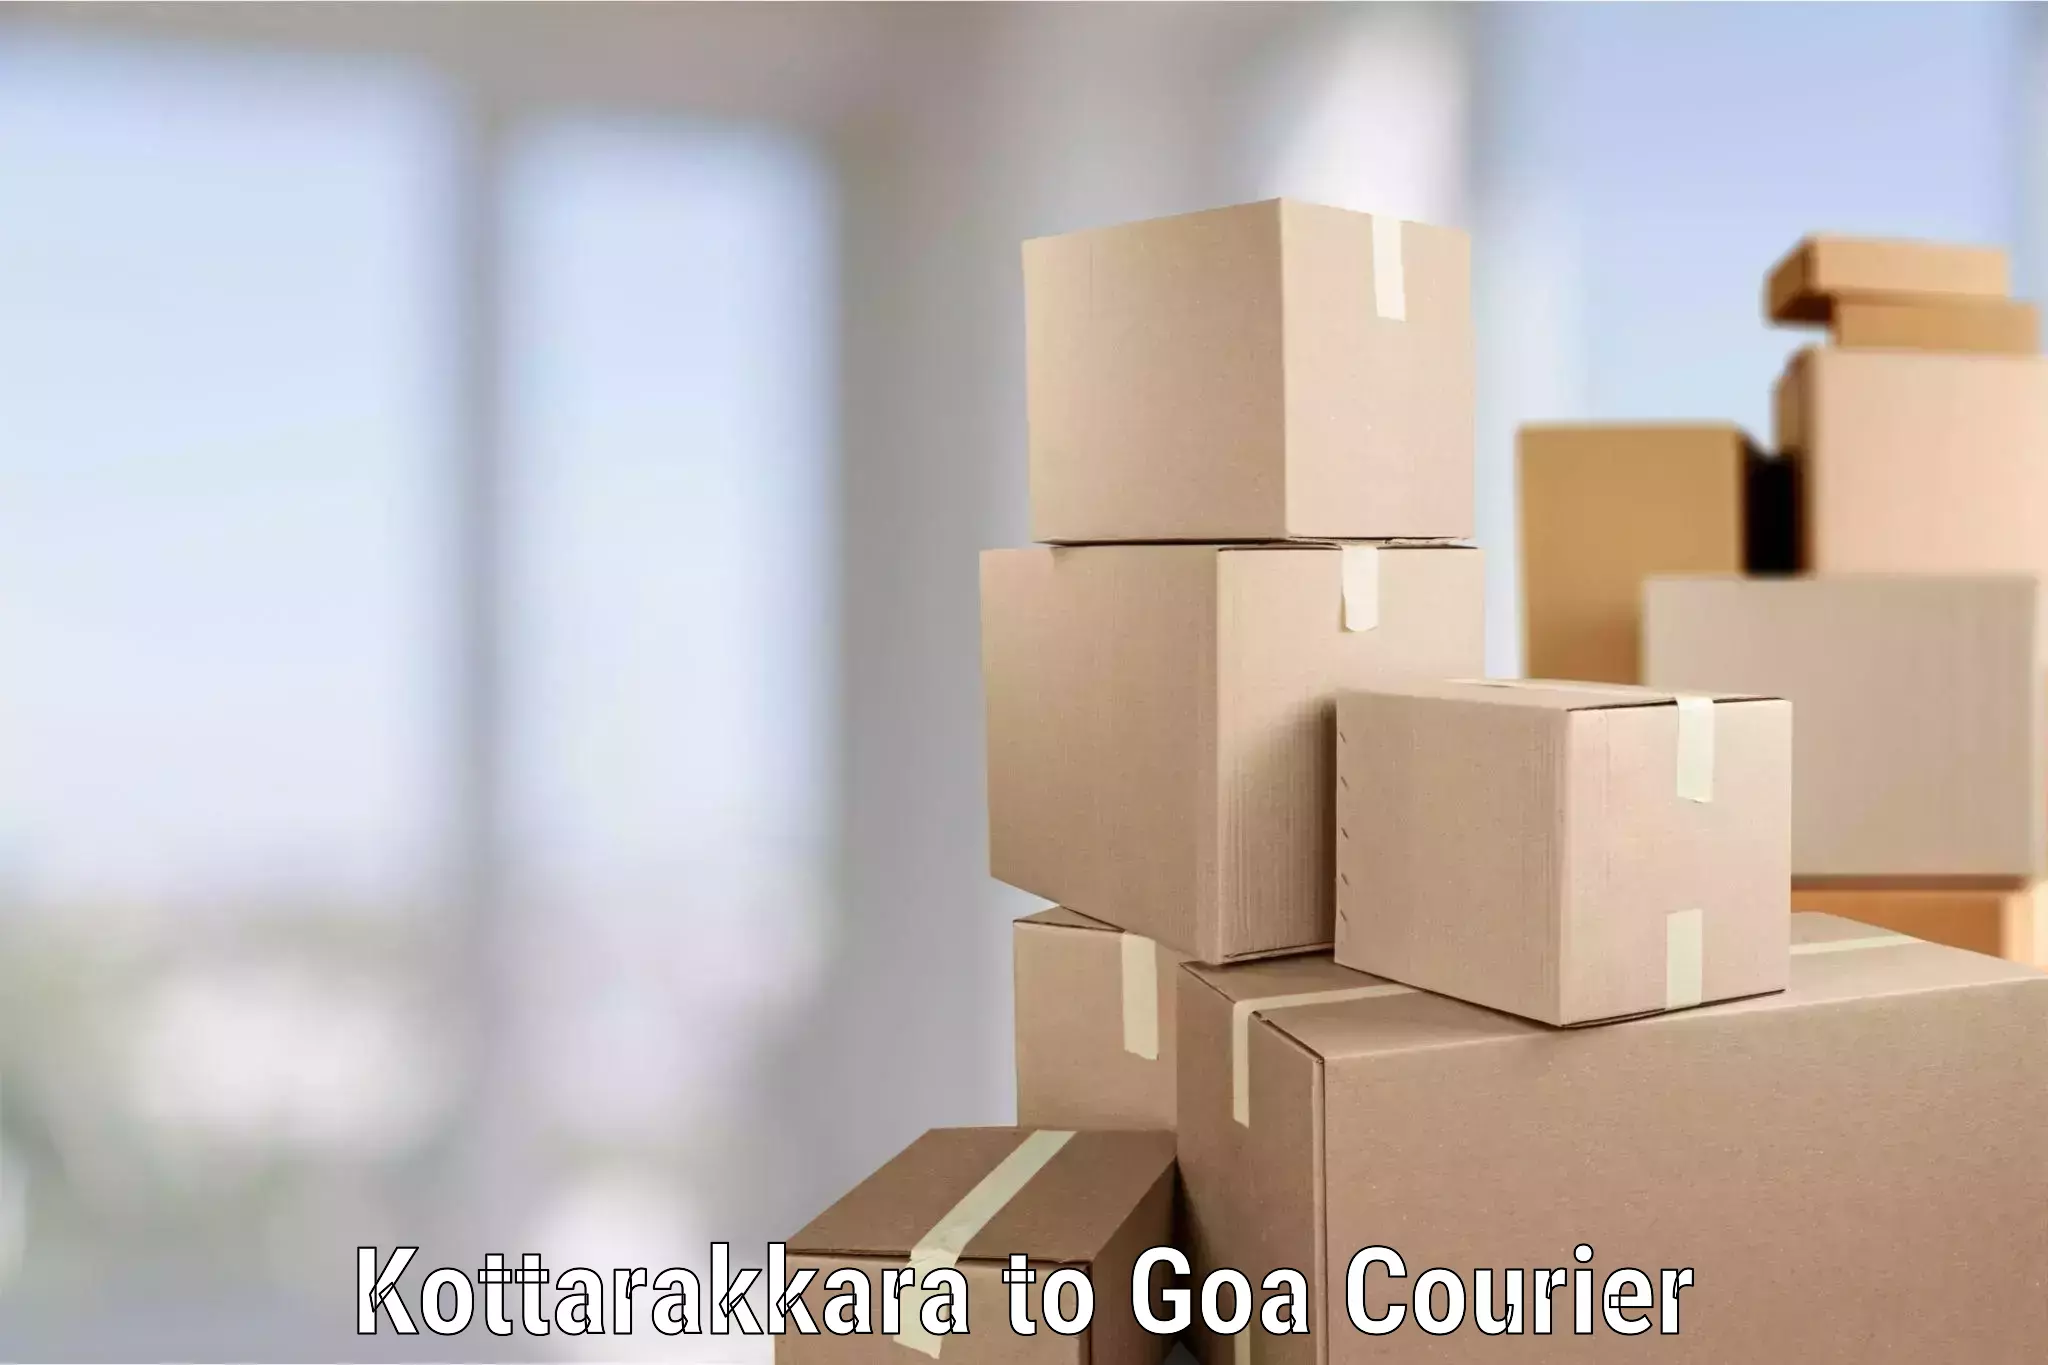 Furniture transport experts in Kottarakkara to Goa